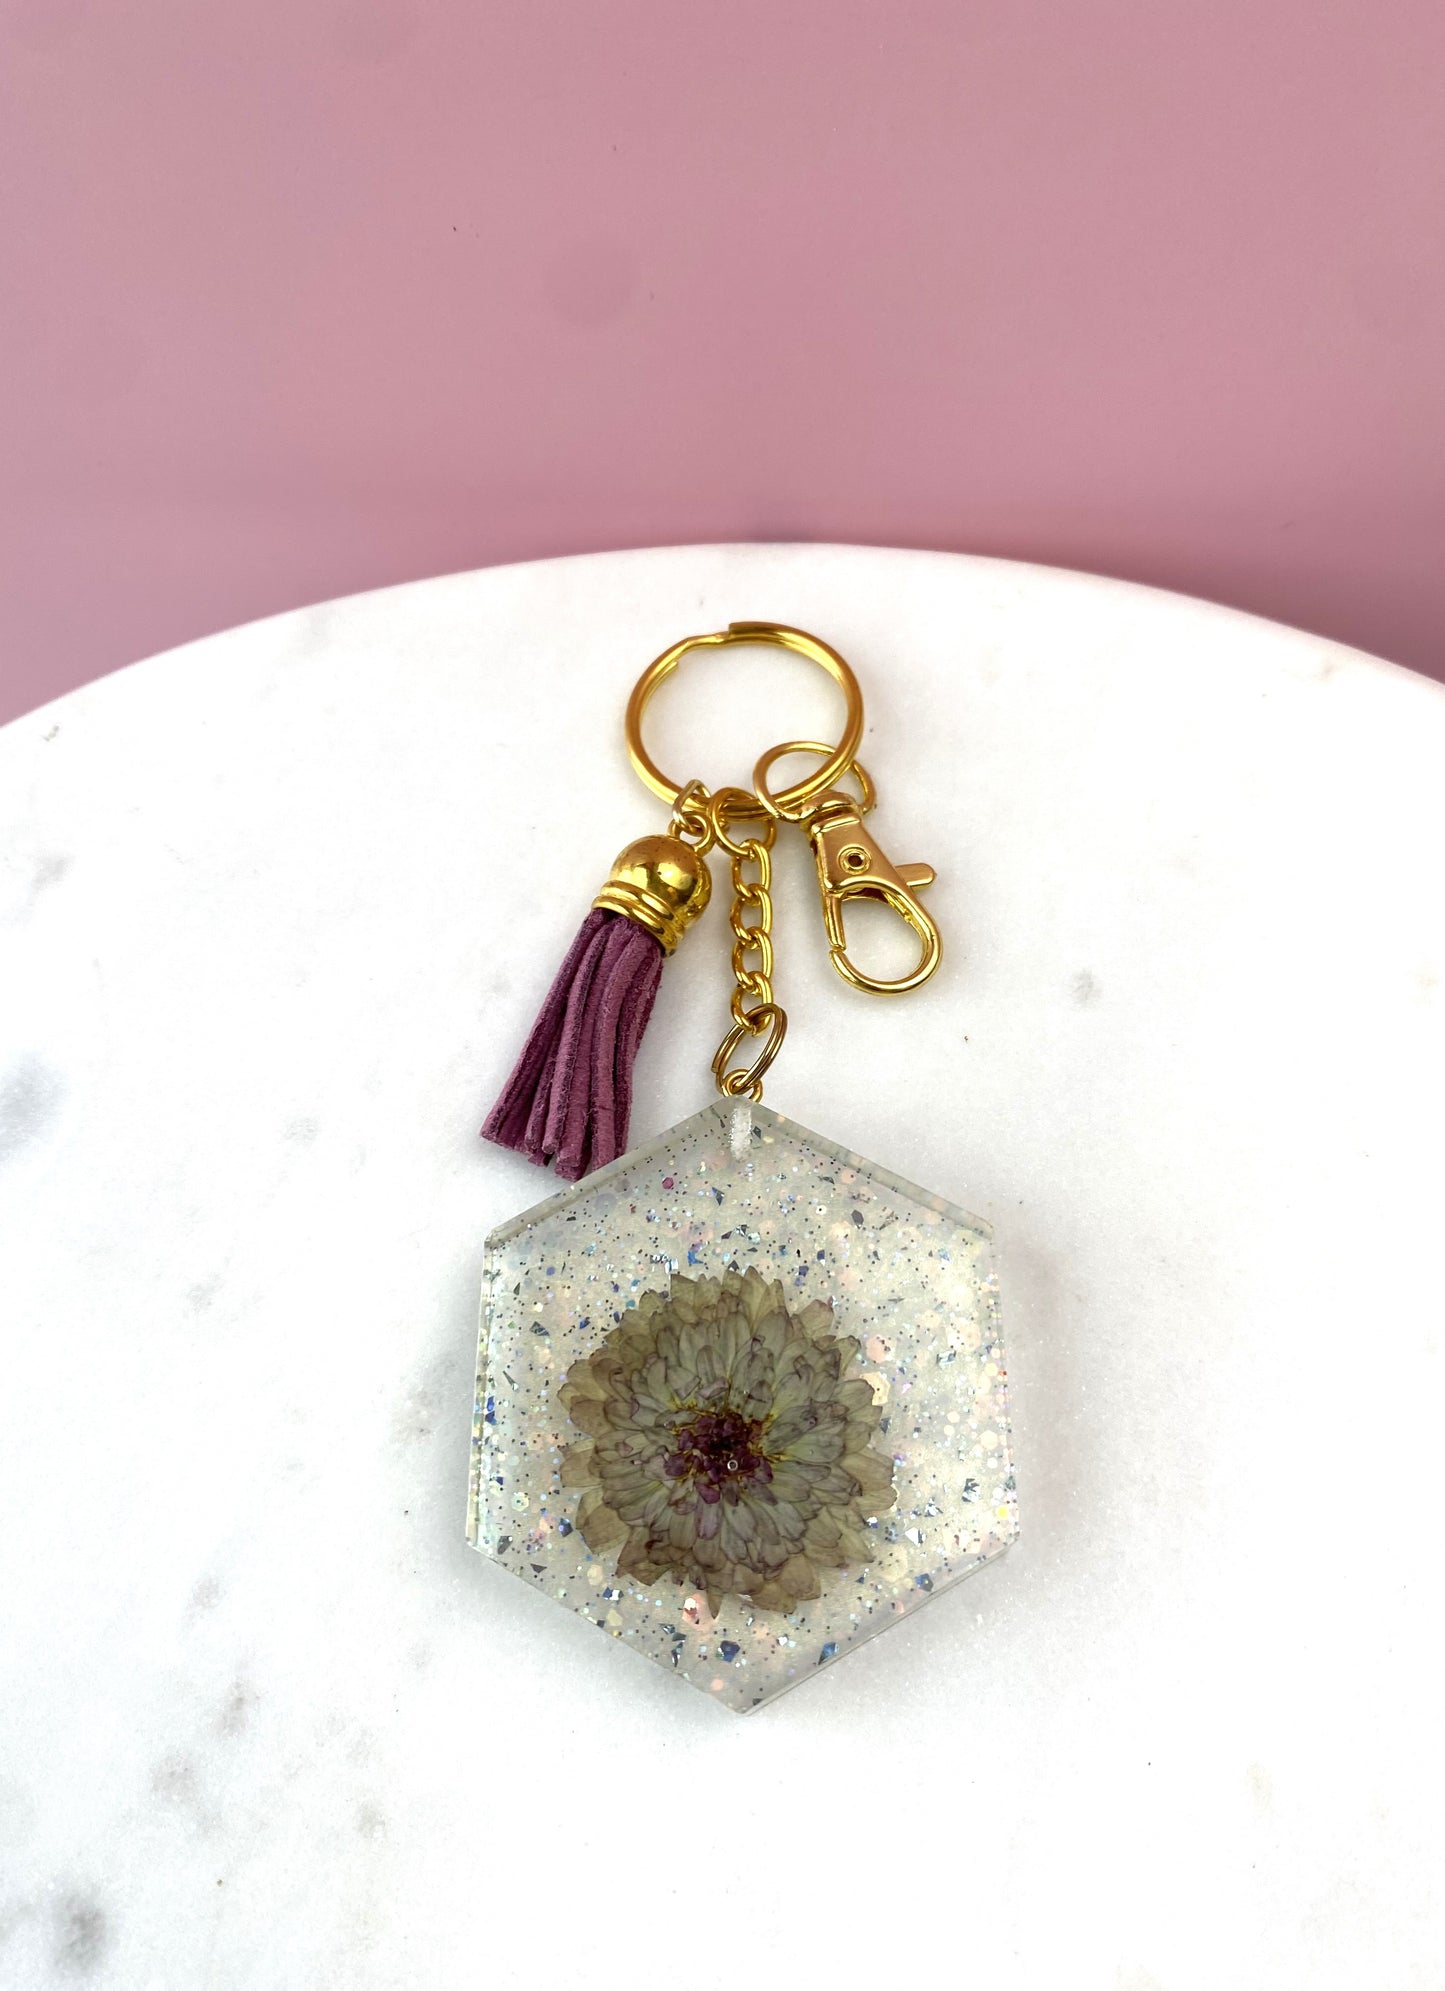 Pressed Flower Keychain | Grey & Purple Hexagon | Handmade Accessories